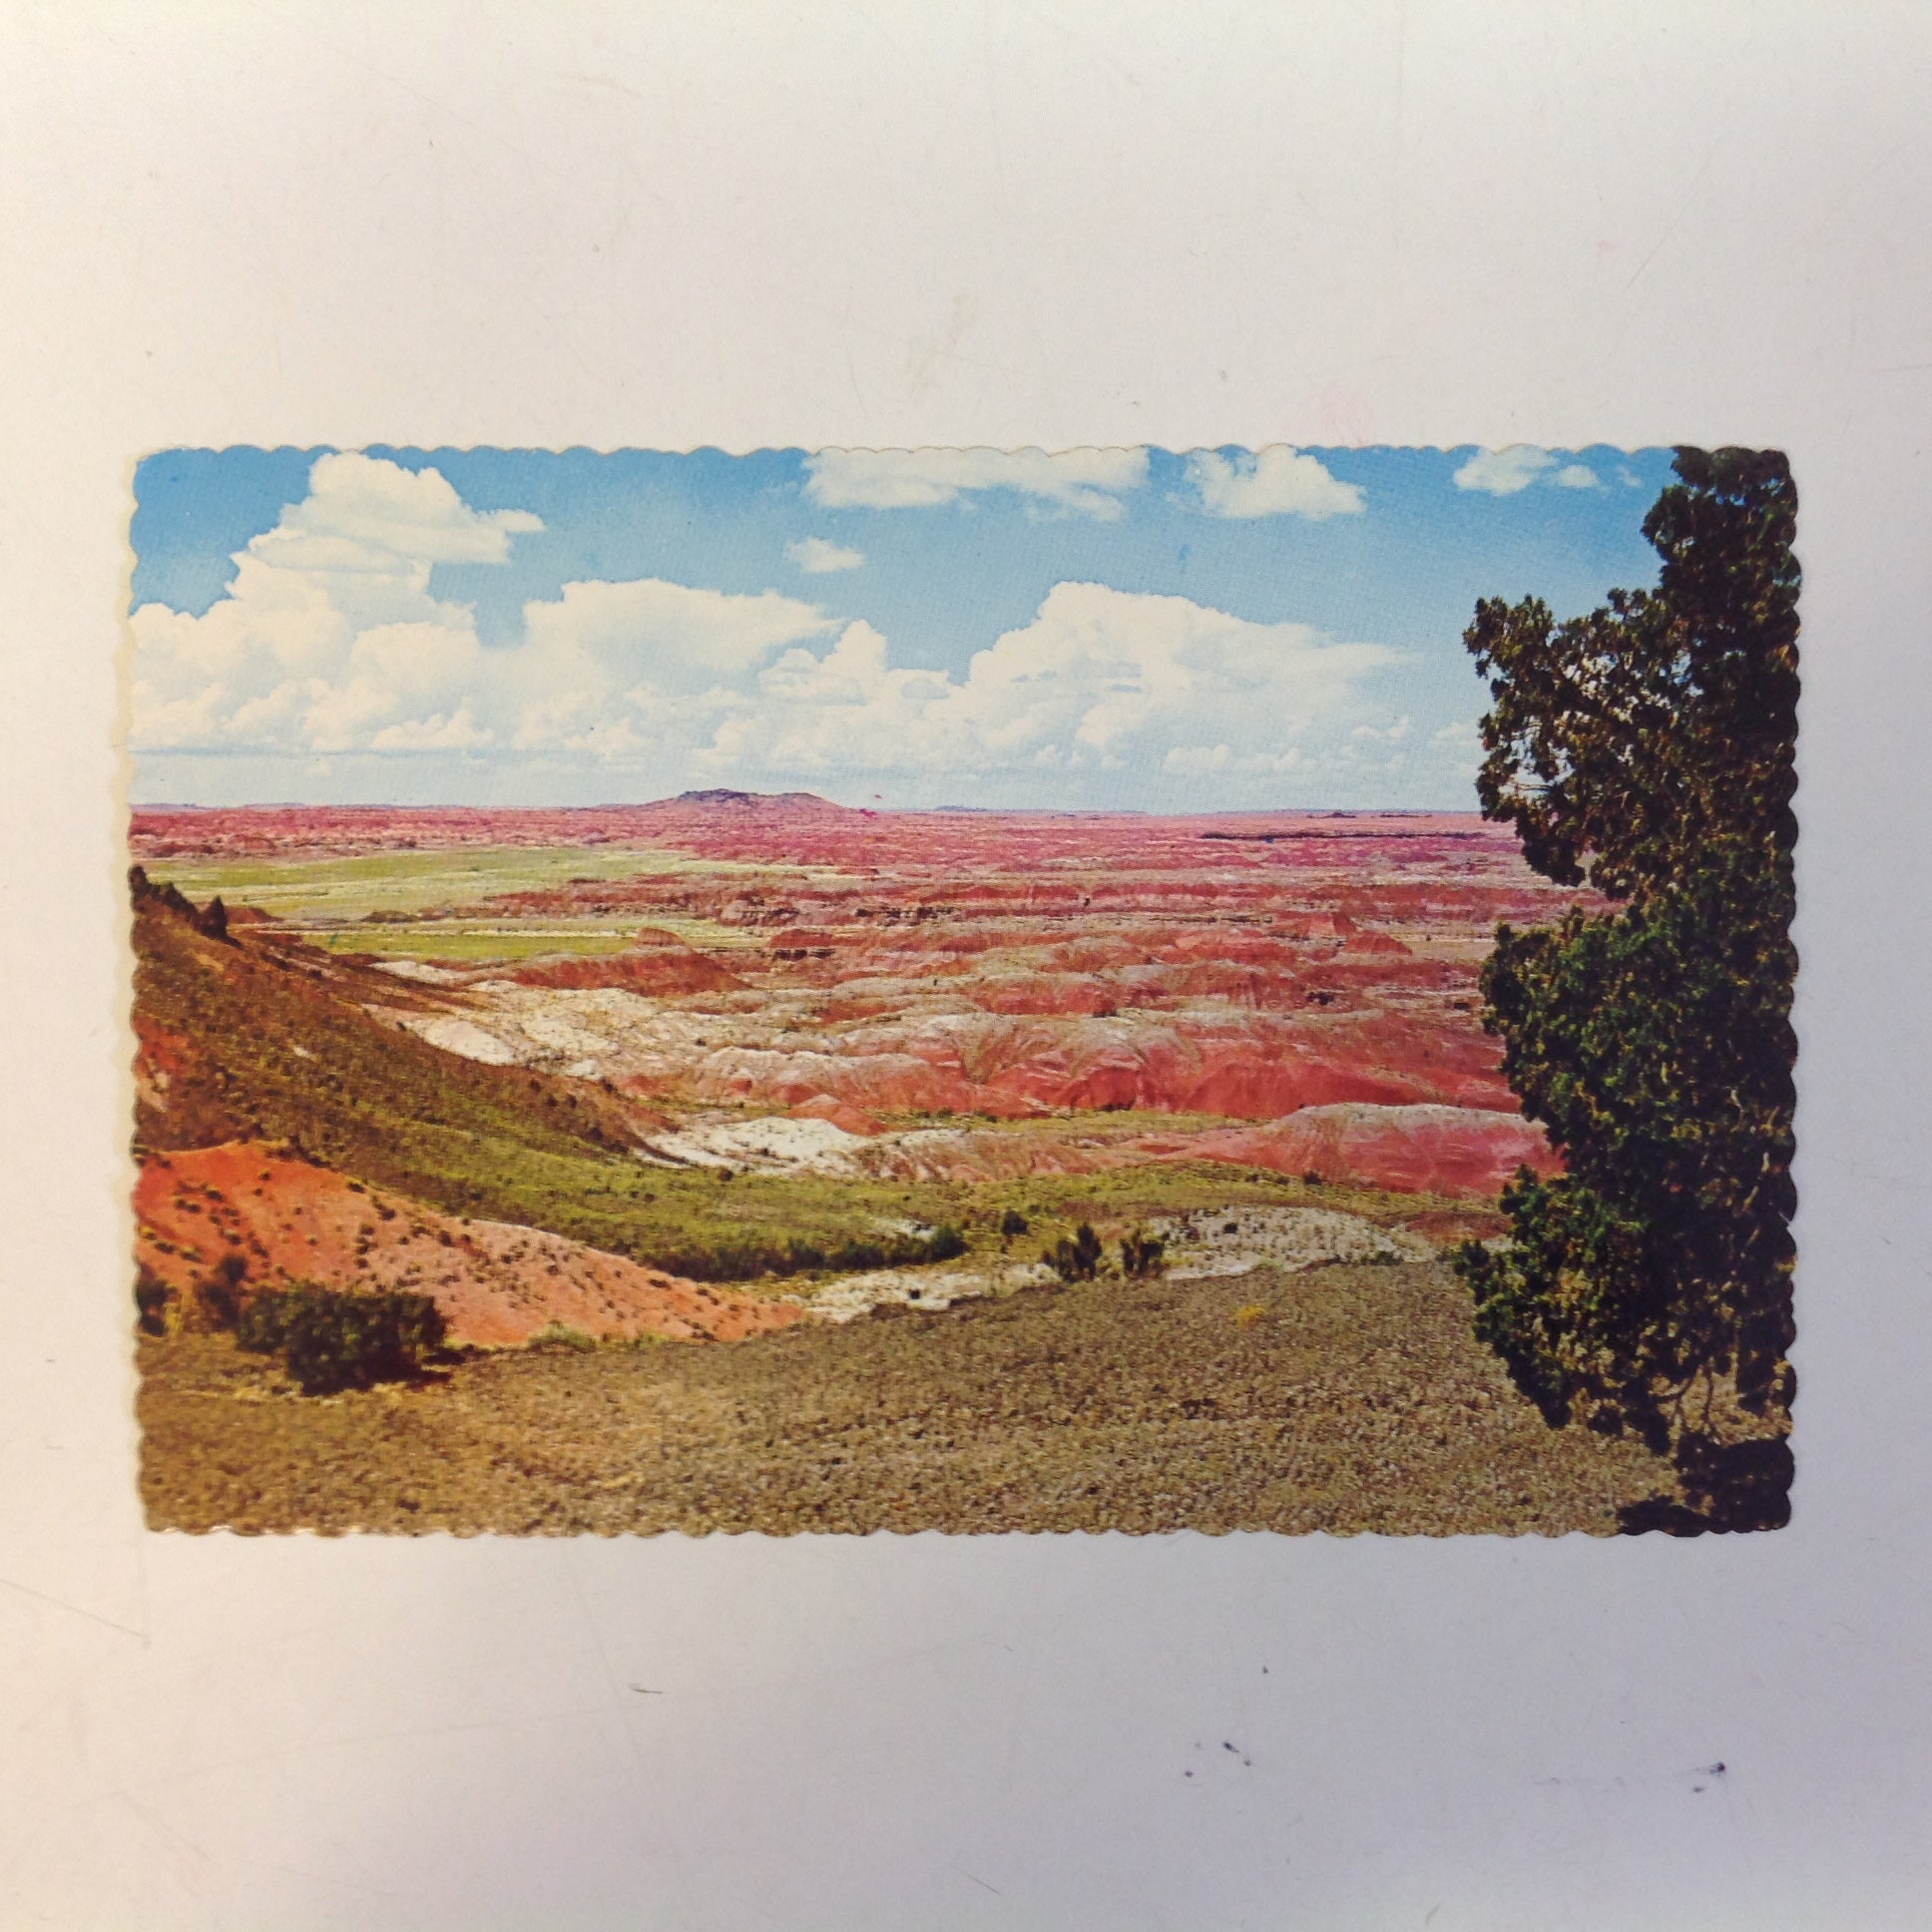 Vintage Petley Studios Souvenir Scalloped Edge Plastichrome Color Postcard Colorful Painted Desert Little Colorado River Grand Canyon National Park Holbrook Arizona